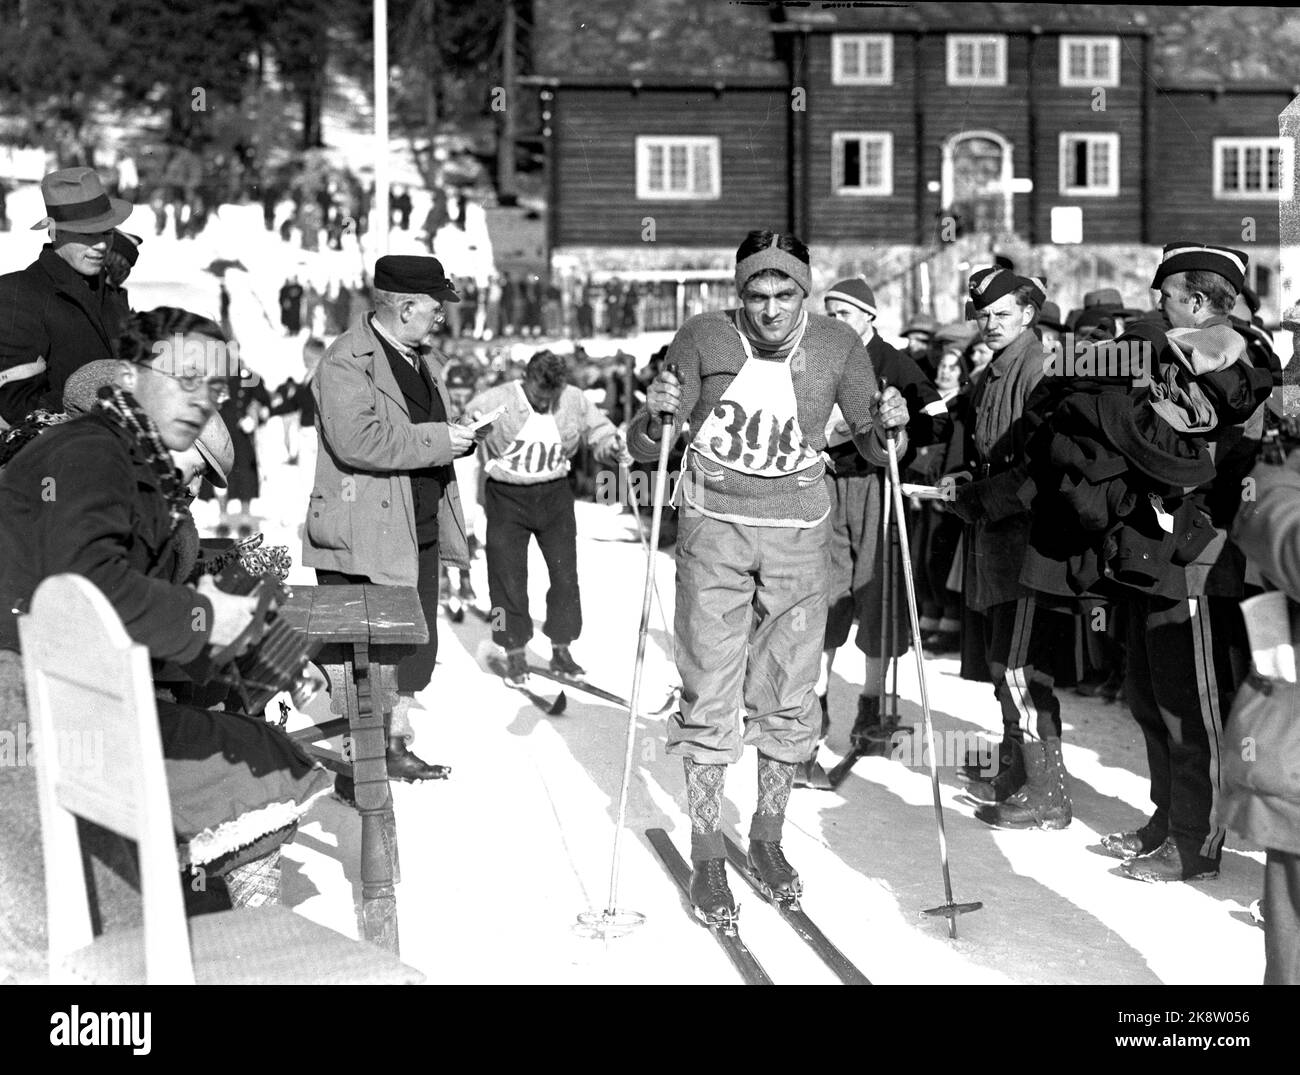 Oslo 03.03.1935 Arne Rustadstuen in azione a Holmenkollen. Arne Rustadstuen (Norwegian, 14/12 1905 – 25/4 1978) è stato un . Ha preso l'oro a 17 km durante la Coppa del mondo di Oslo nel 1930, e t bronzo in combinato durante la Coppa del mondo di Oberhof 1931. Durante le Olimpiadi del 1932 prese il bronzo a cinque miglia. Rustadstuen ha partecipato anche alle Olimpiadi del 1936 a Garmisch-Partenkirchen. Nel 1935 riceve la medaglia Holmenkoll. Foto; NTB / NTB Foto Stock